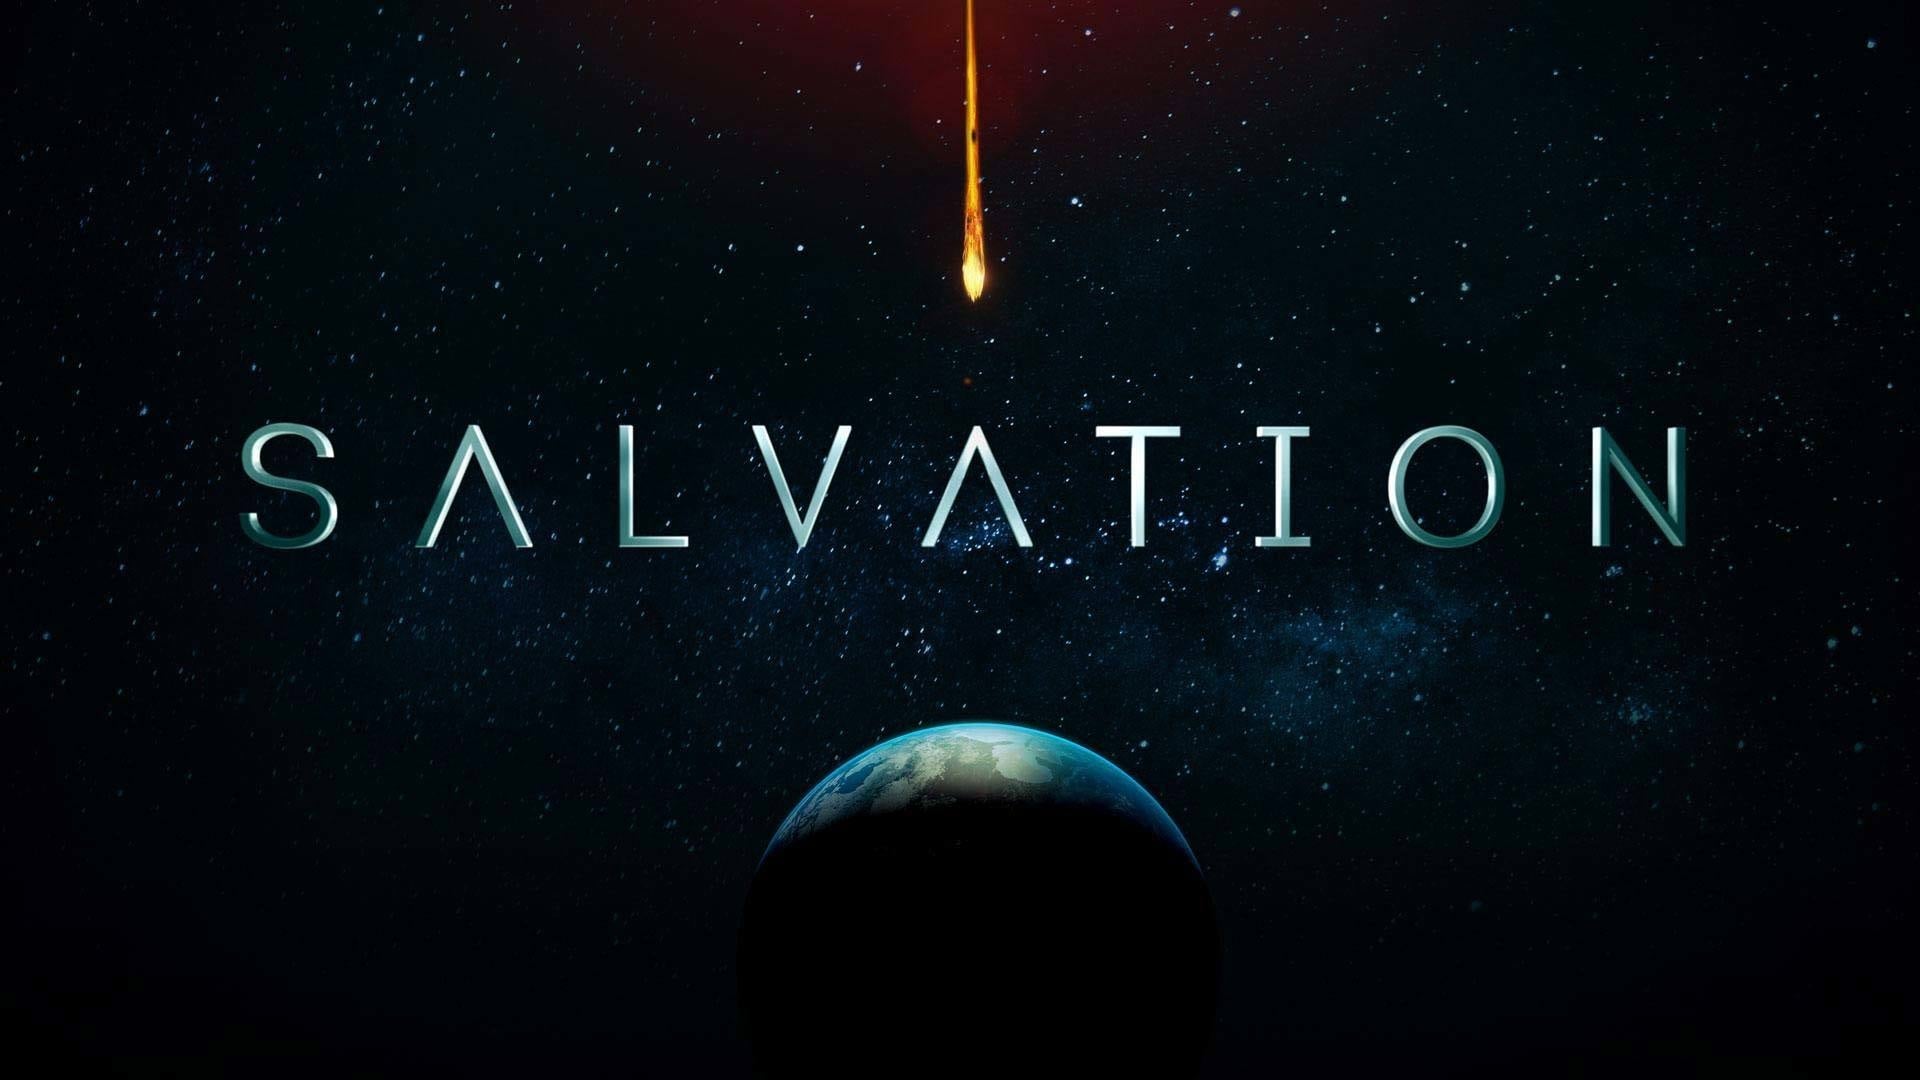 გადარჩენა სეზონი 1 / Salvation Season 1 ქართულად